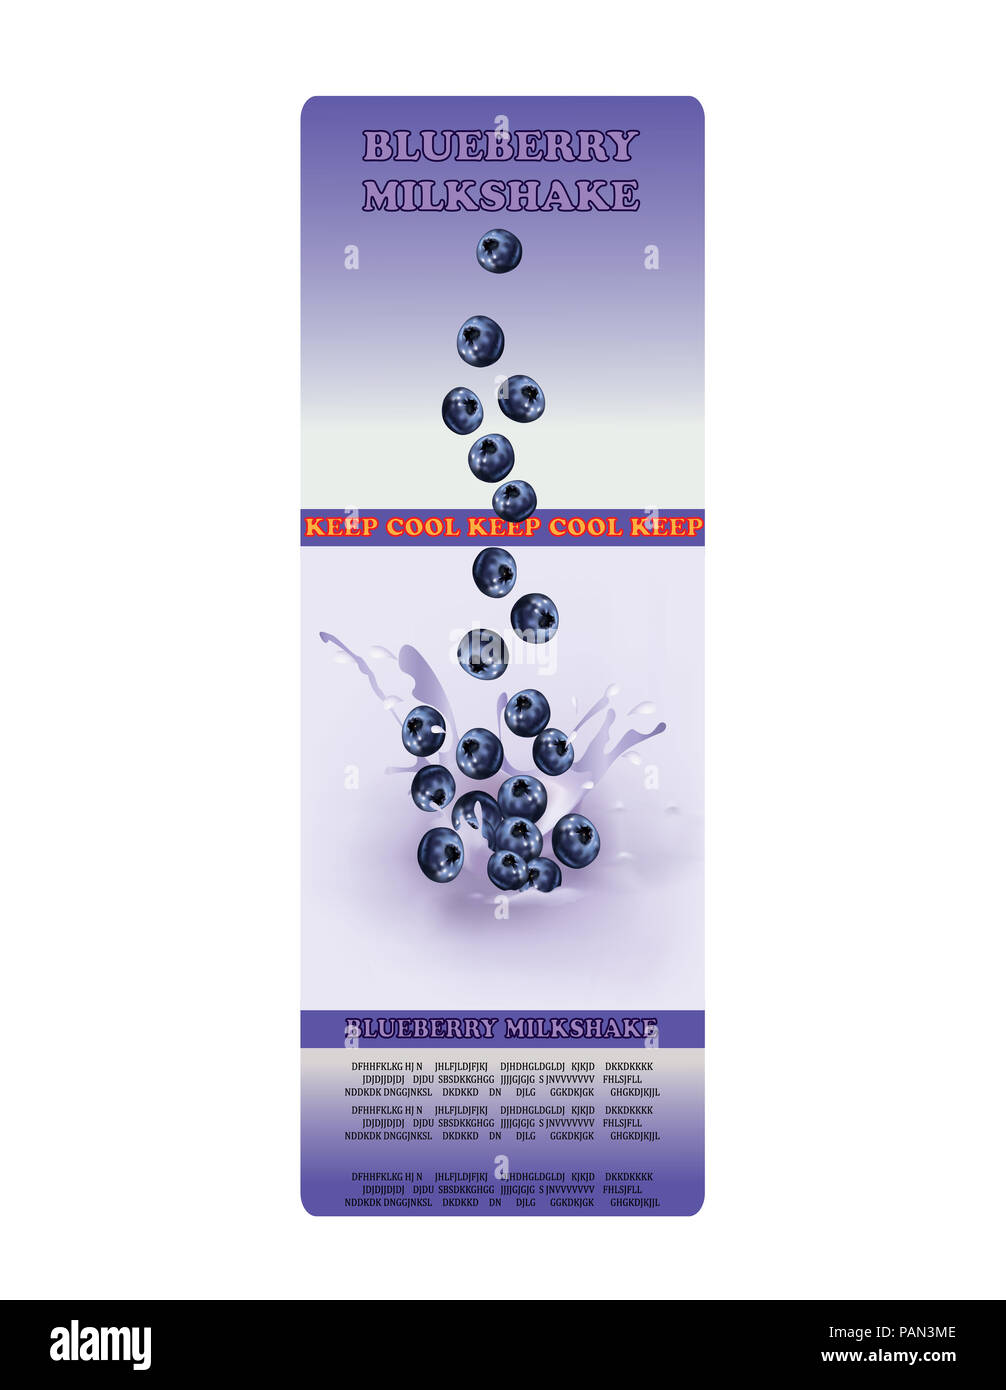 Packaging for blueberry flavor milkshake Stock Photo